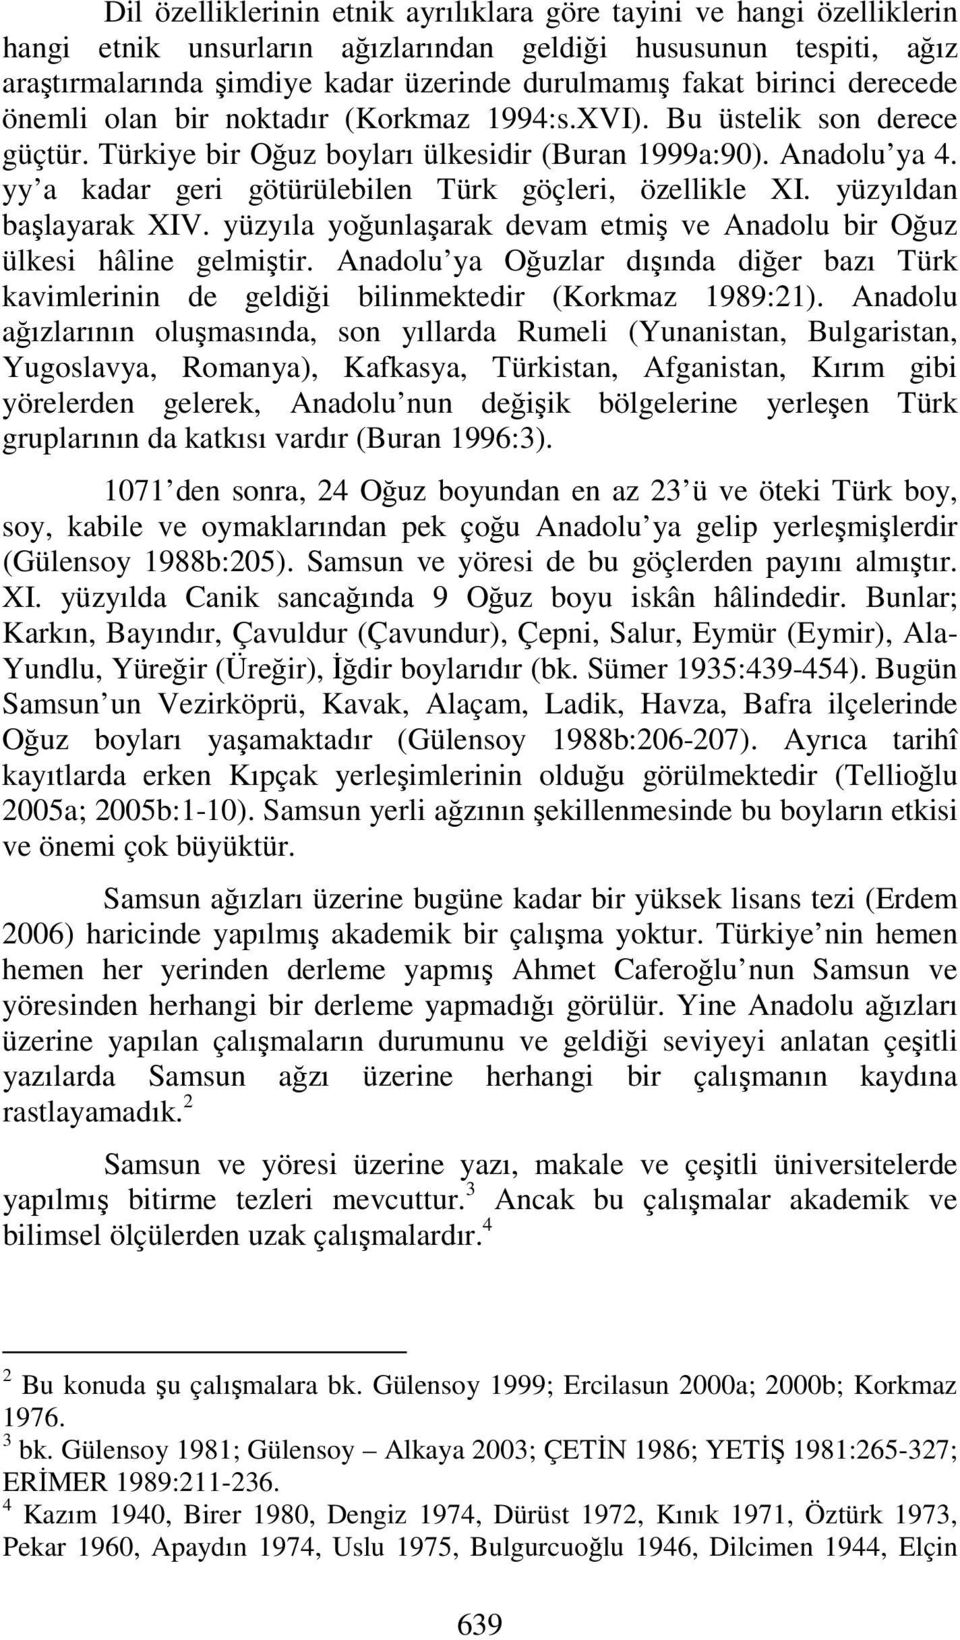 yy a kadar geri götürülebilen Türk göçleri, özellikle XI. yüzyıldan başlayarak XIV. yüzyıla yoğunlaşarak devam etmiş ve Anadolu bir Oğuz ülkesi hâline gelmiştir.